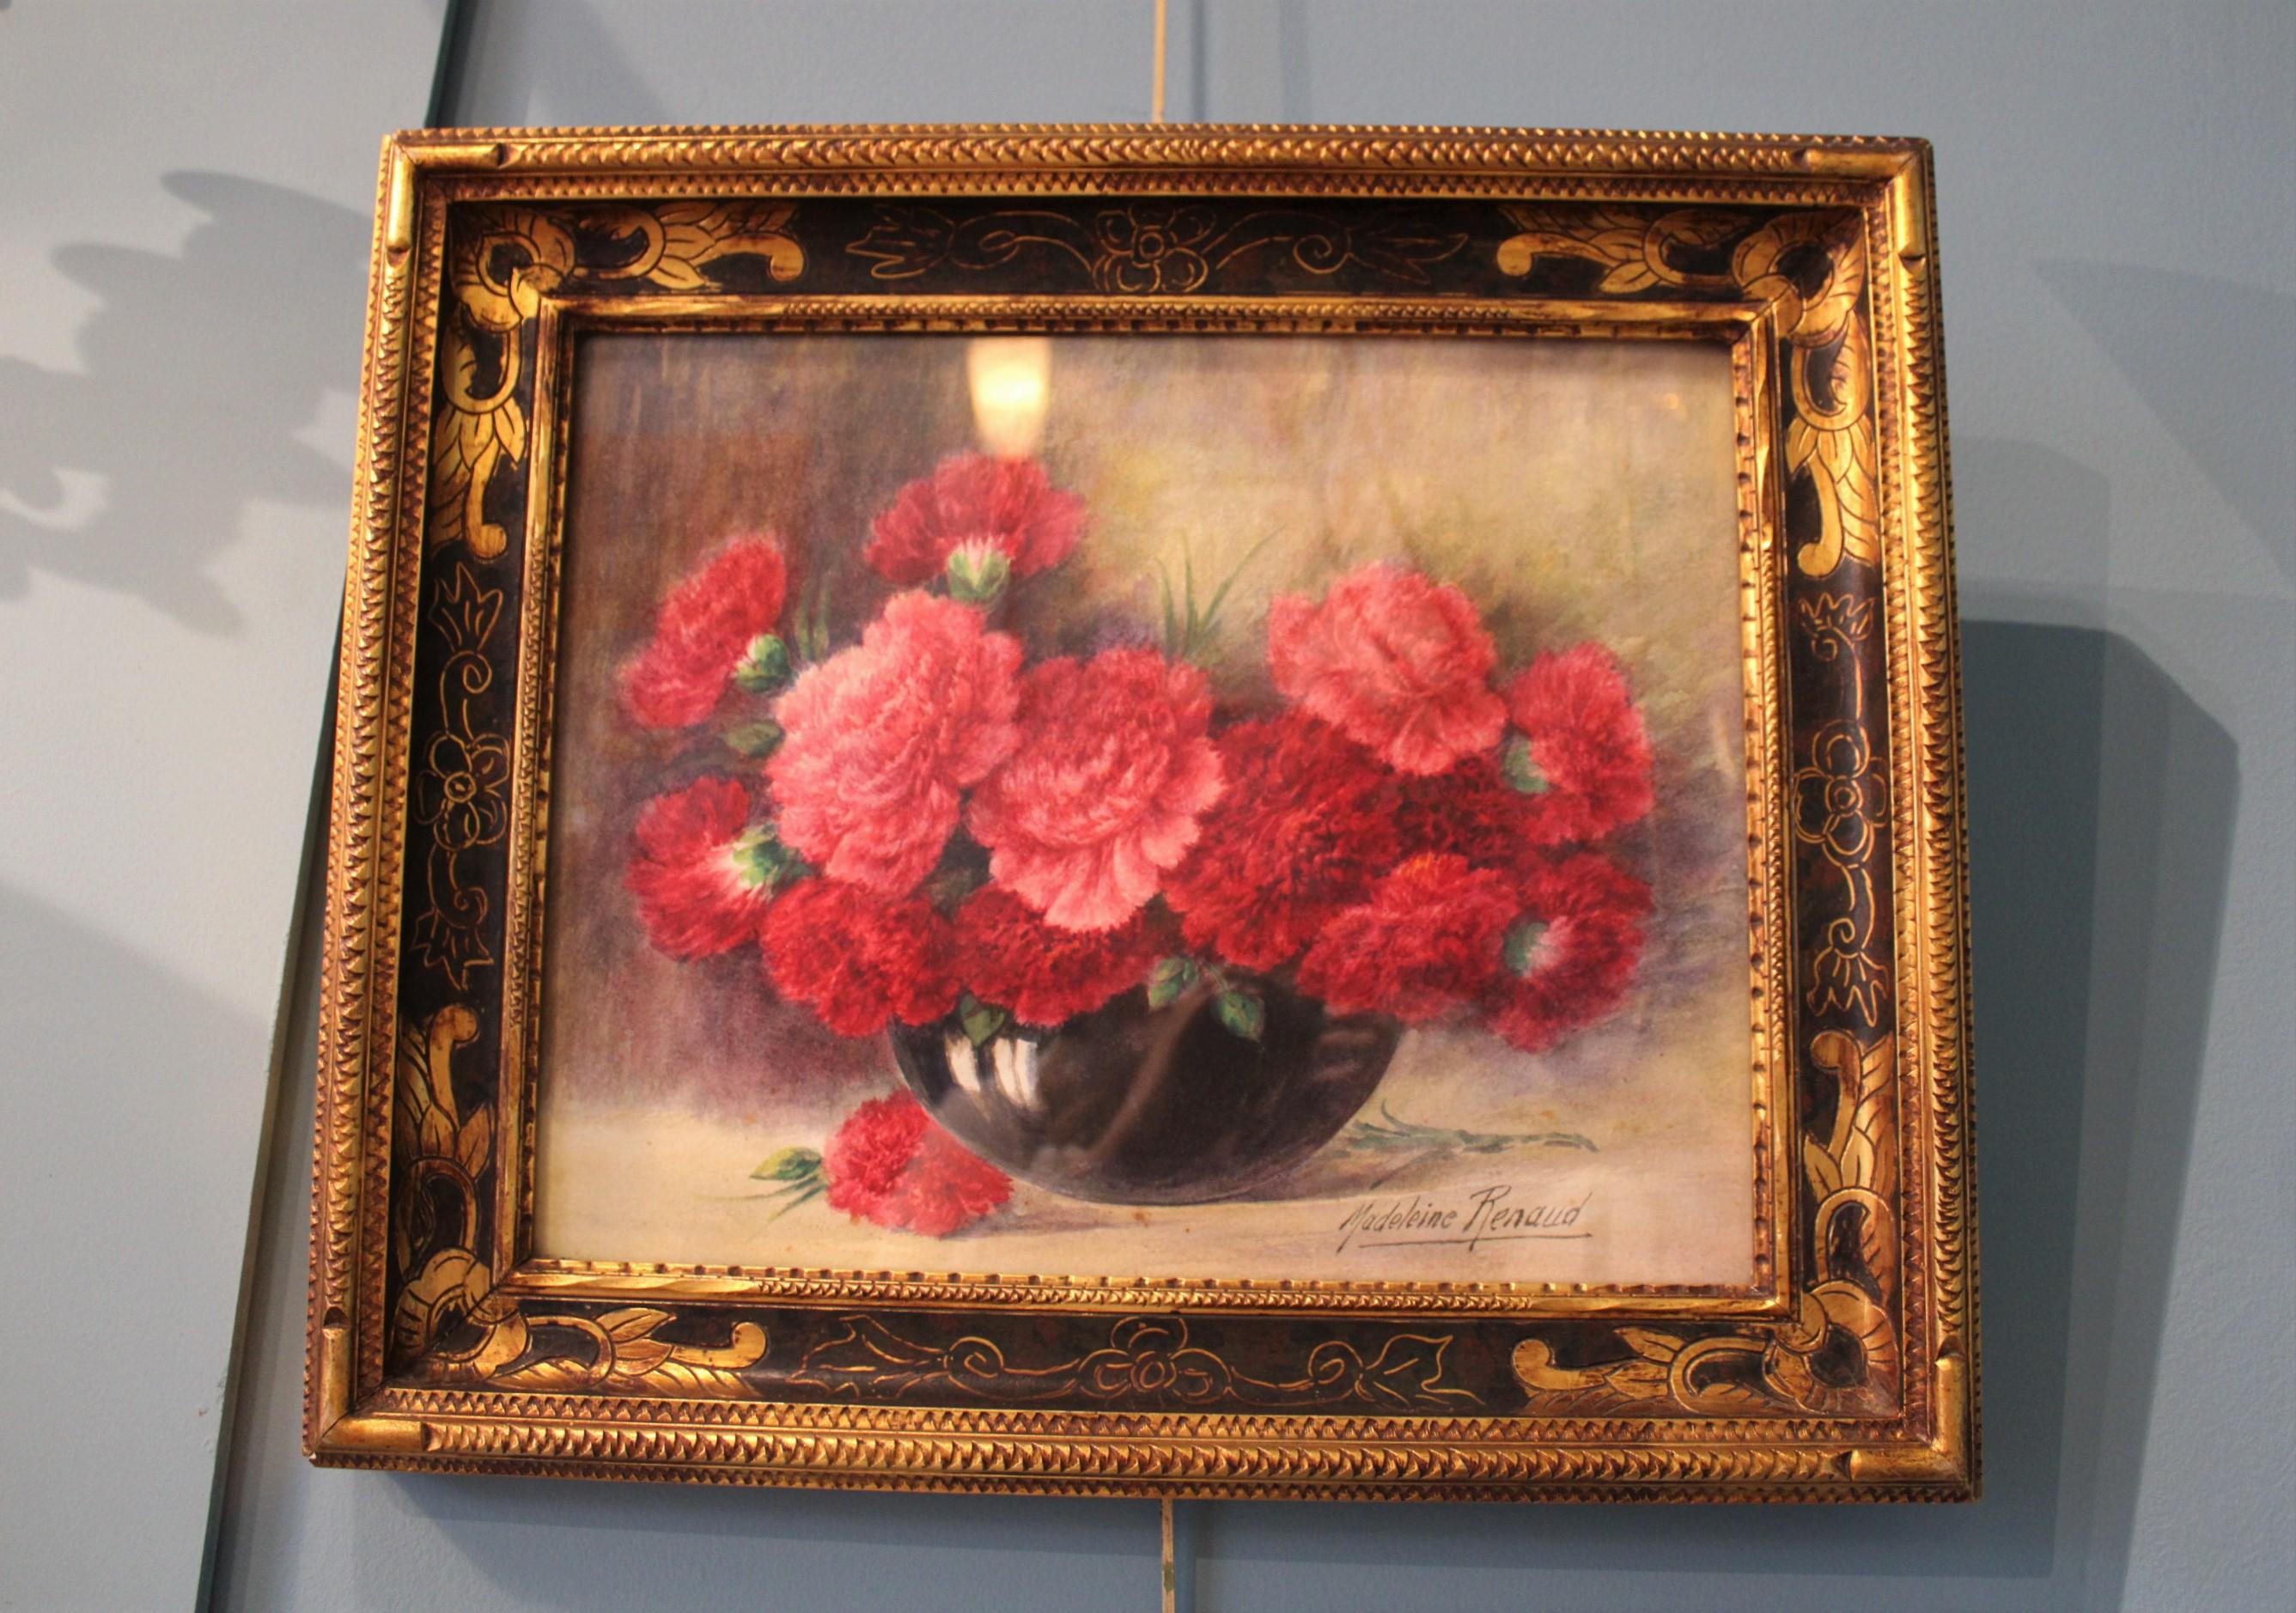 Madeleine Renaud (1900 - 1994)
Vase mit einem Blumenstrauß.
Aquarell auf Papier, unter Glas gerahmt.
Frankreich, 20. Jahrhundert.

Maße mit Rahmen: 52 x 44 x 4,5 cm.
Maße ohne Rahmen: 40 x 33 x 0,2 cm.